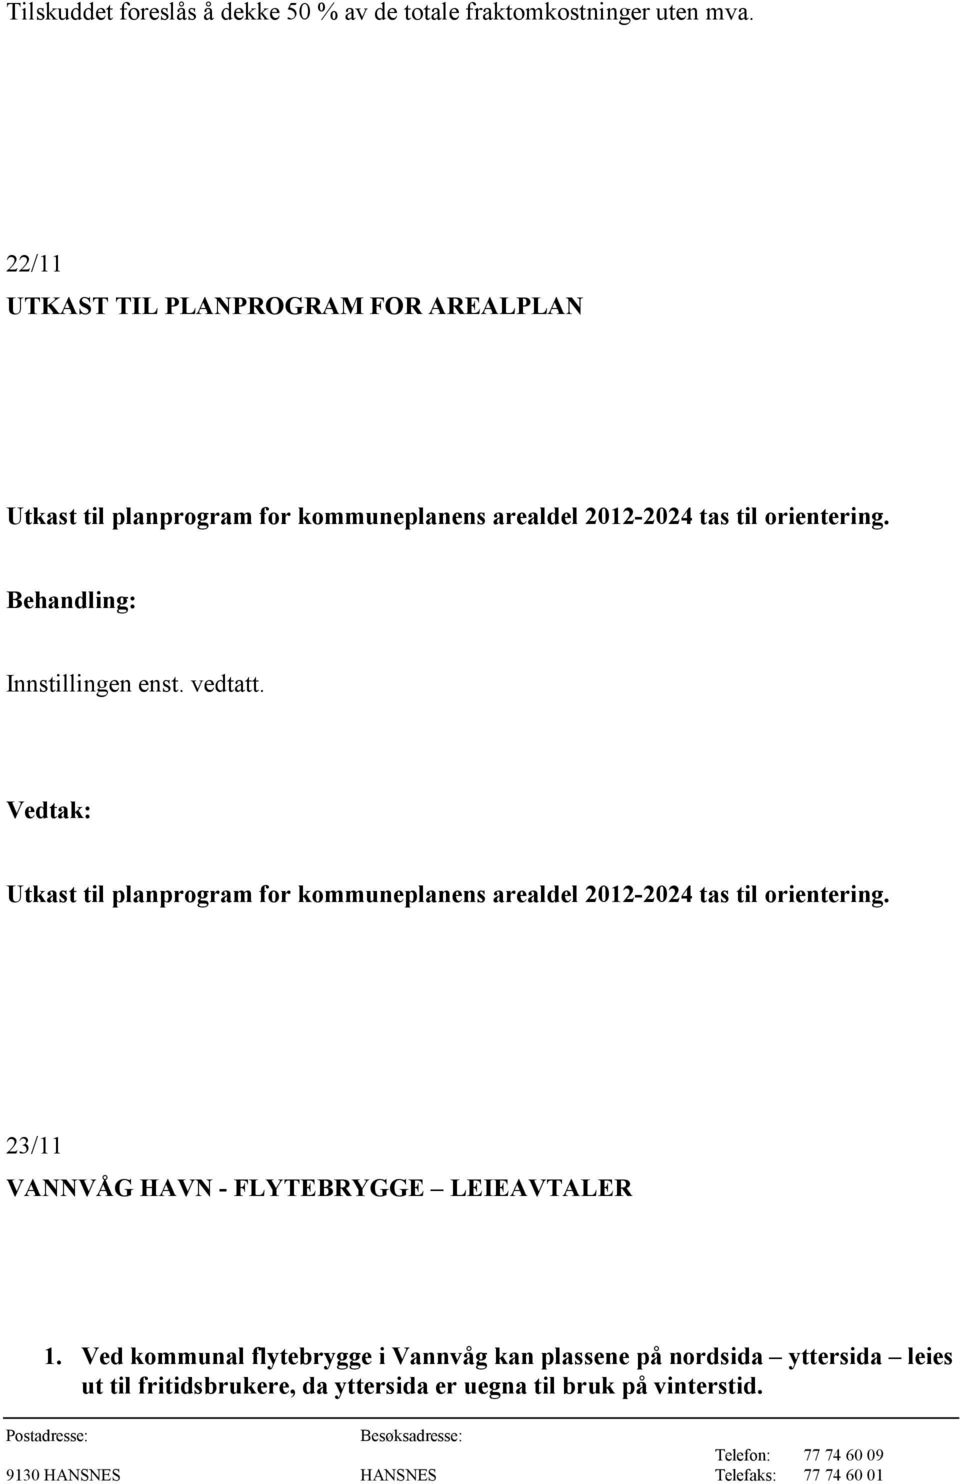 Innstillingen enst. vedtatt. Utkast til planprogram for kommuneplanens arealdel 2012-2024 tas til orientering.